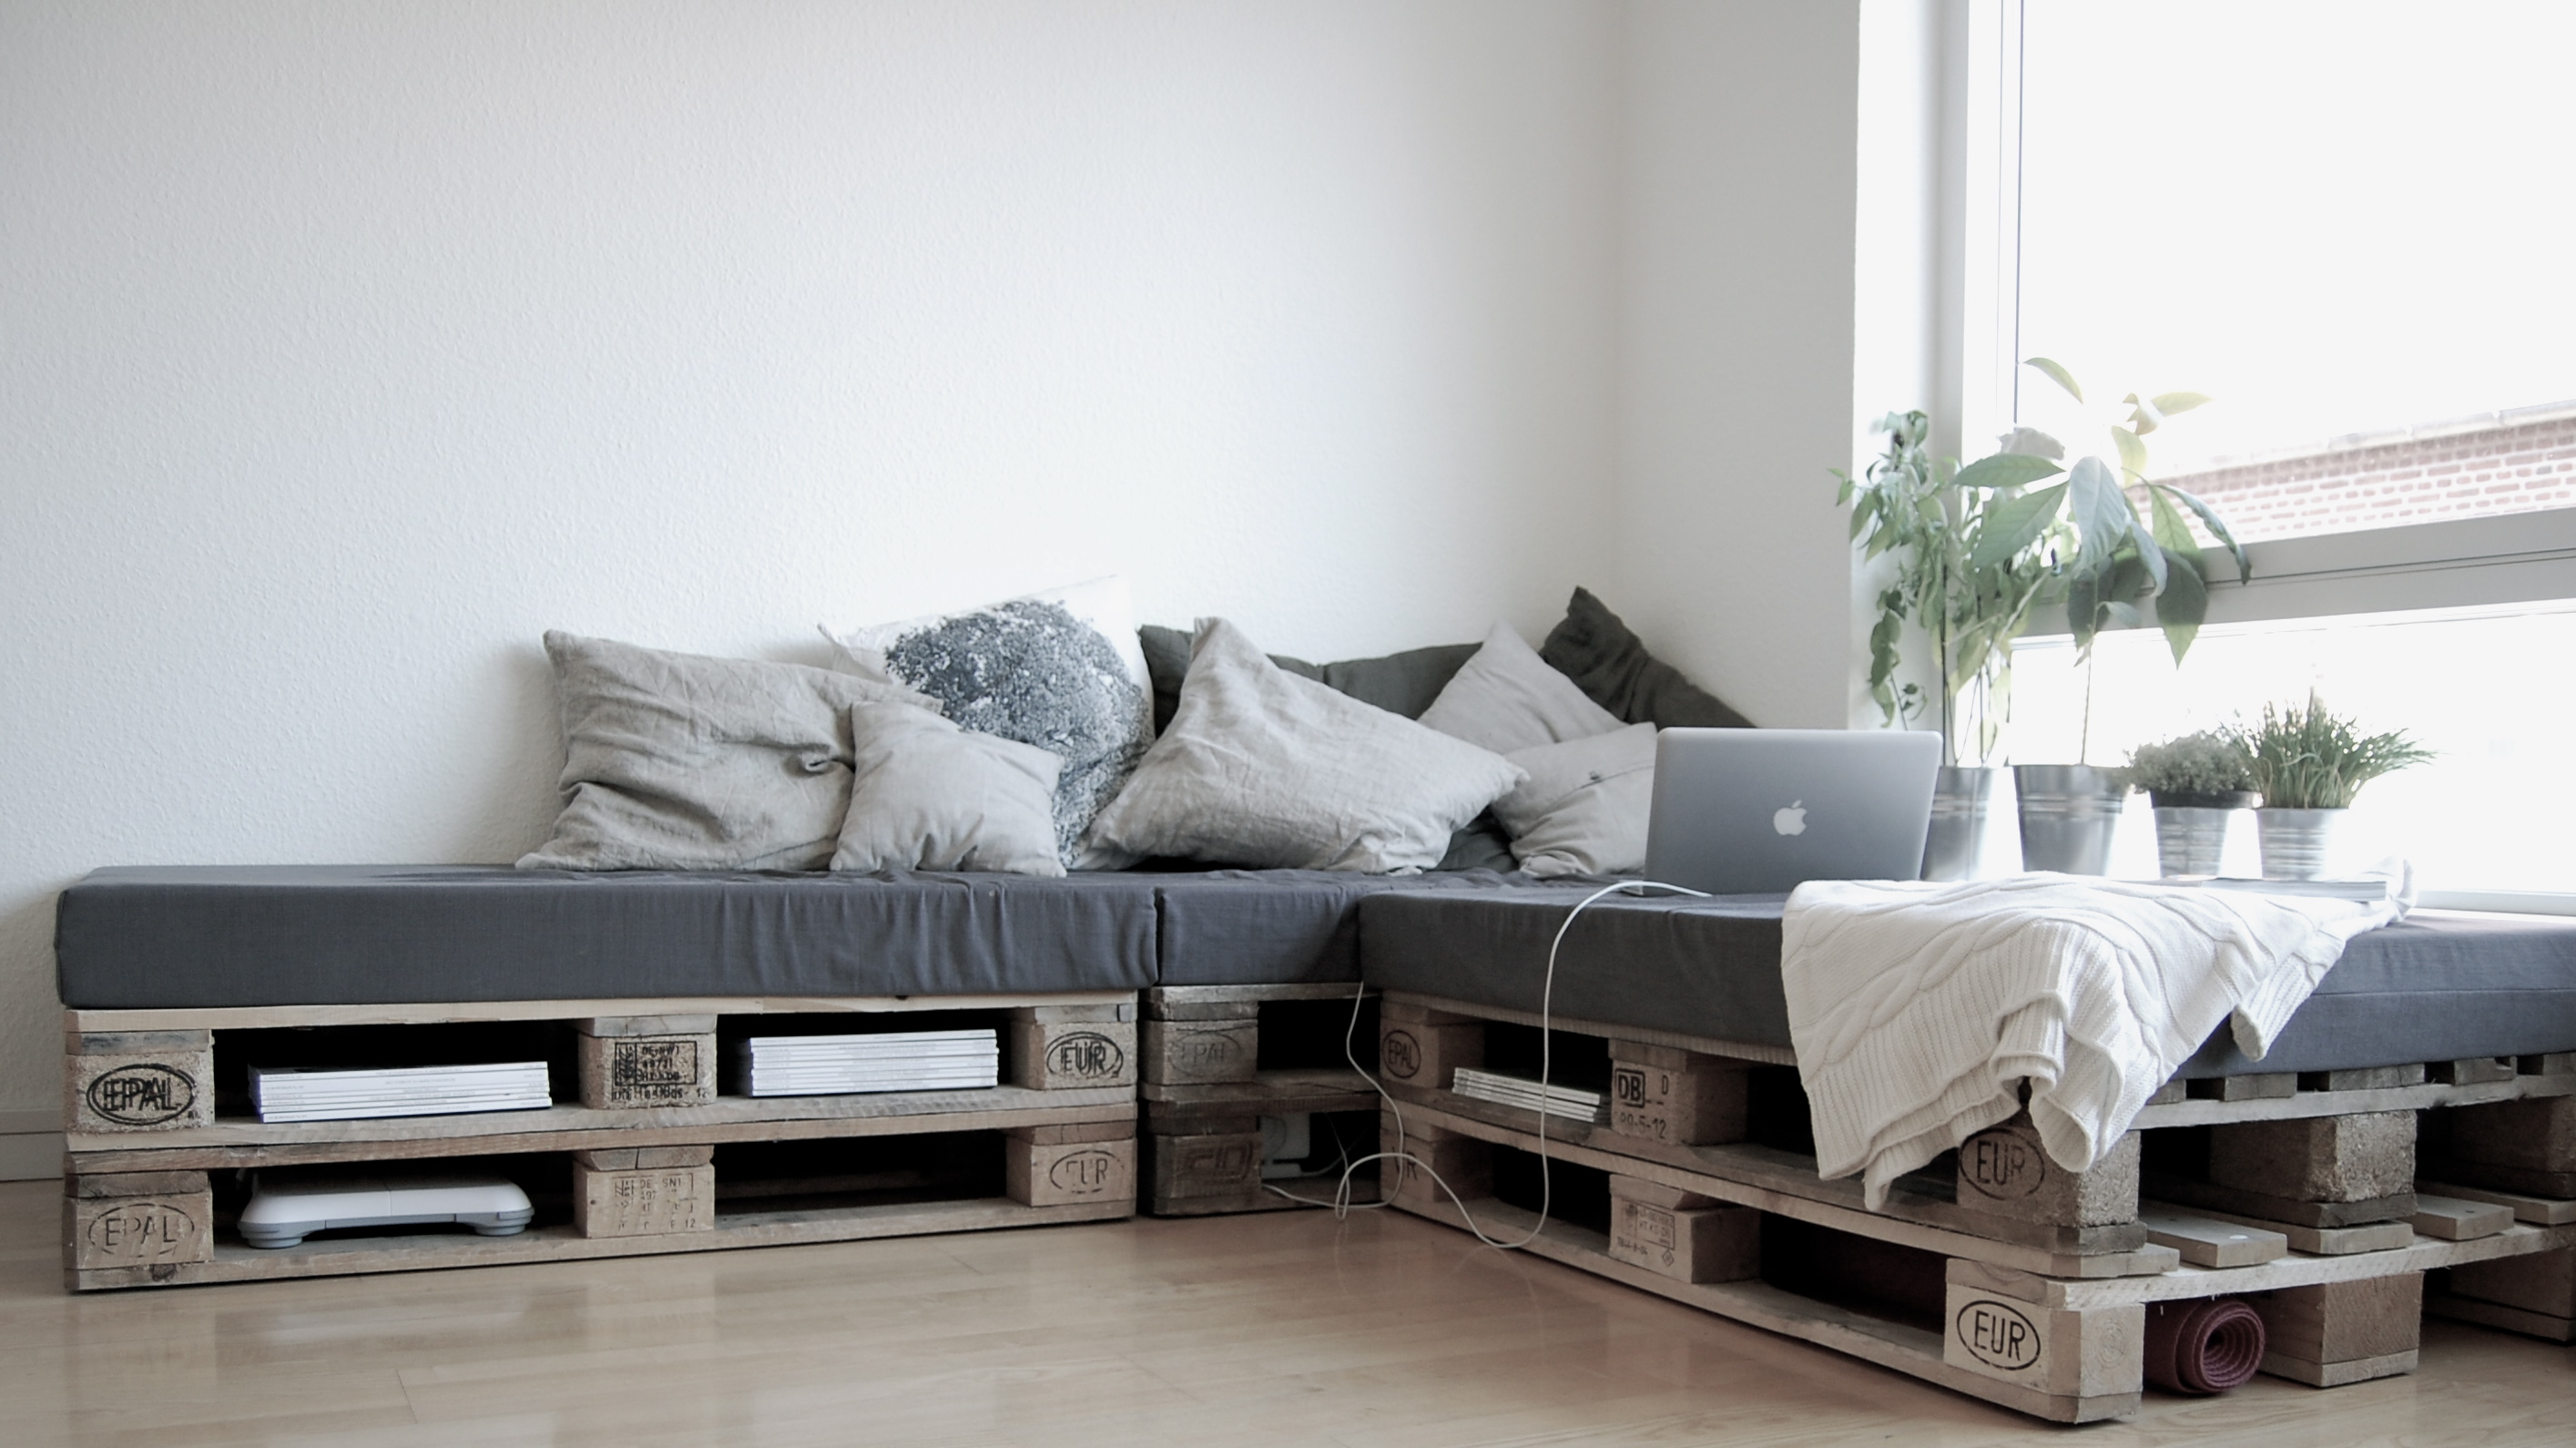 Diy pallet sofa dengan pallet euro untuk perabot bilik tidur